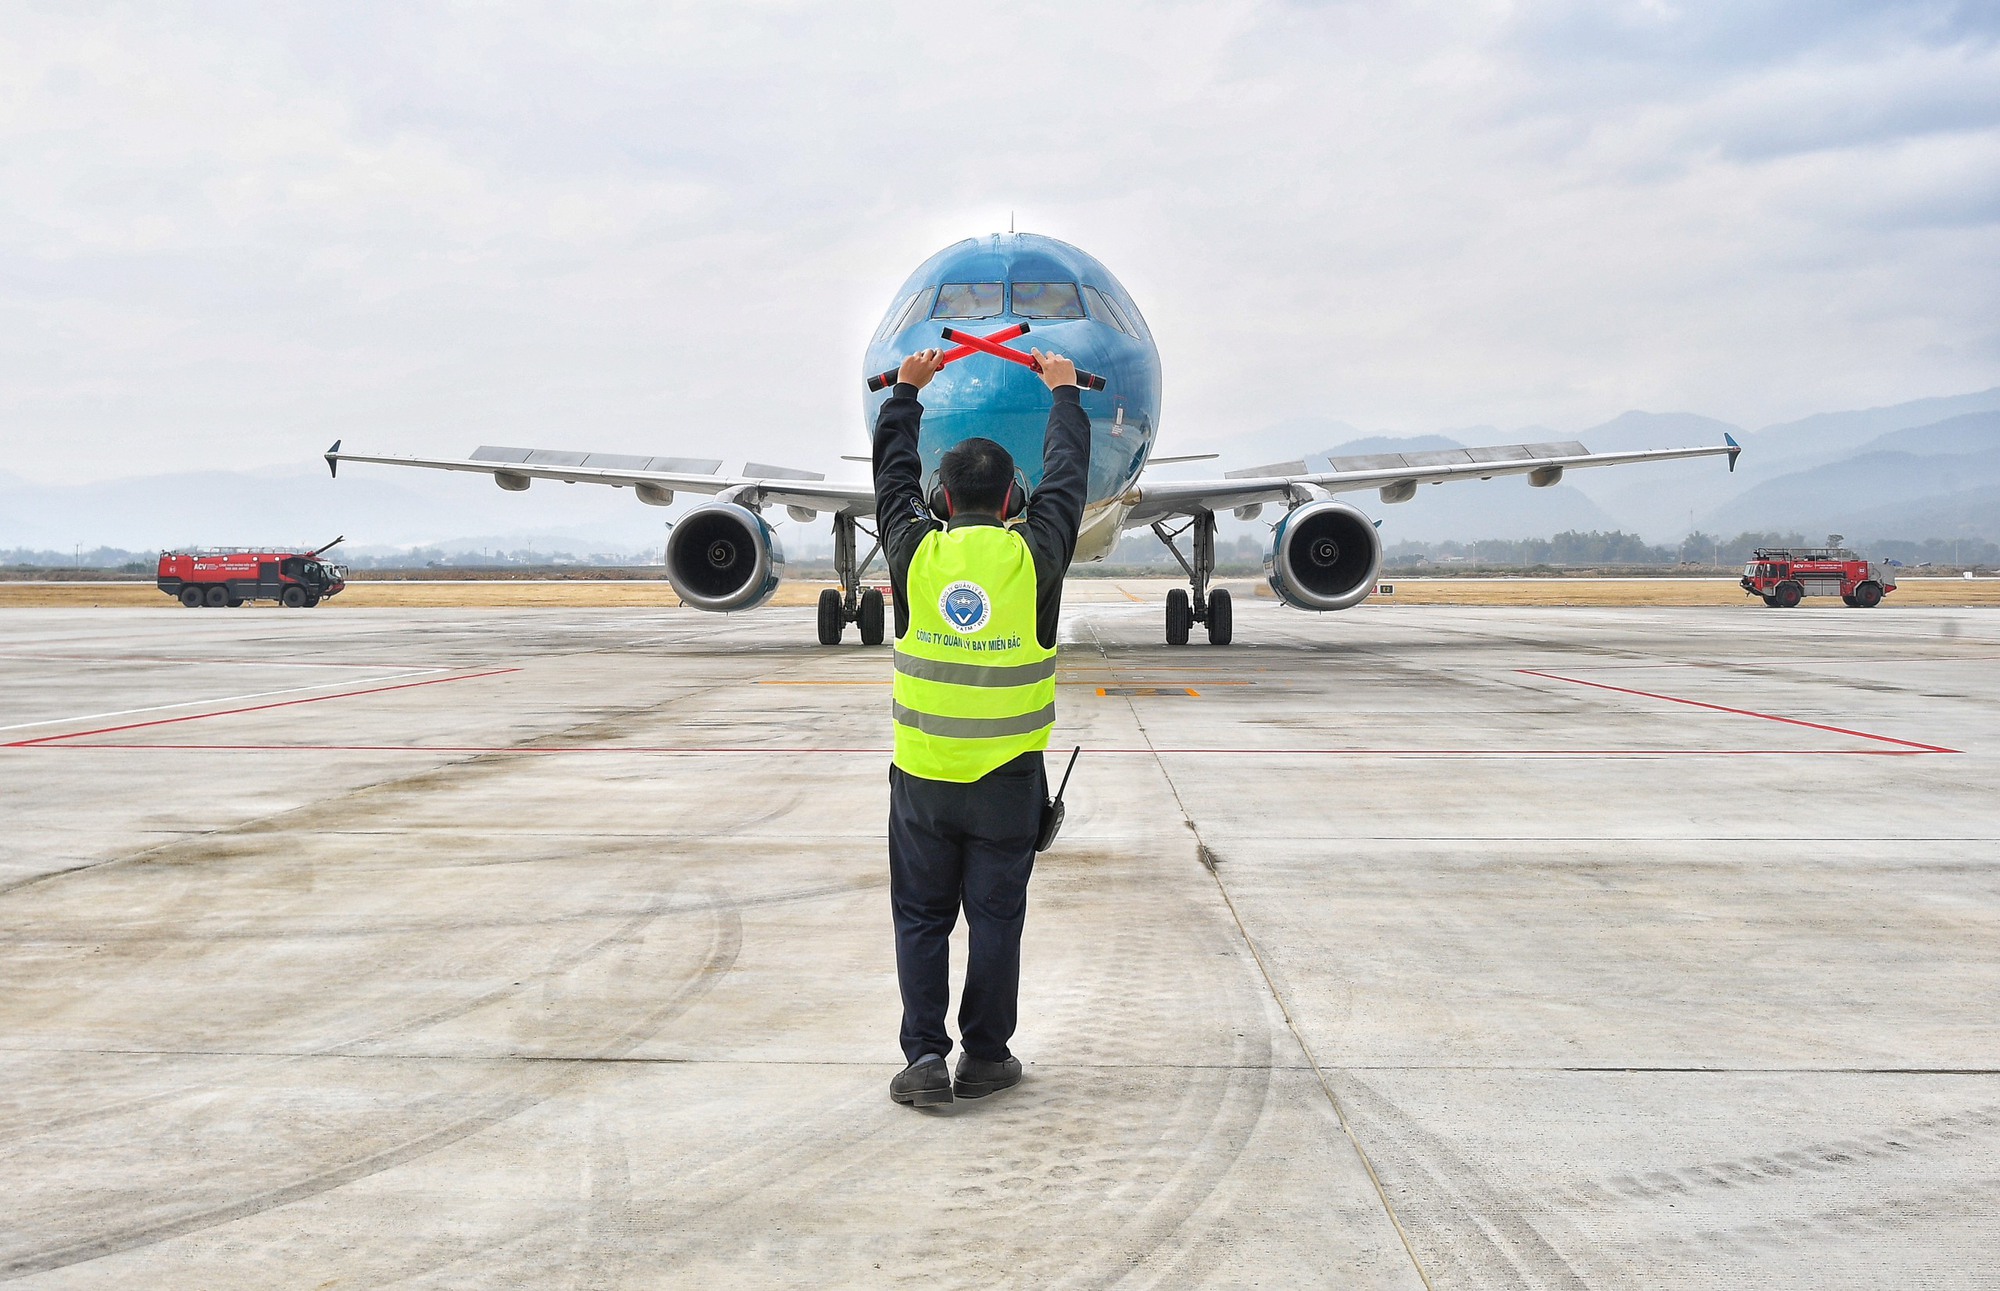 Sân bay Điện Biên đón máy bay cỡ lớn đầu tiên trong lịch sử  - Ảnh 9.